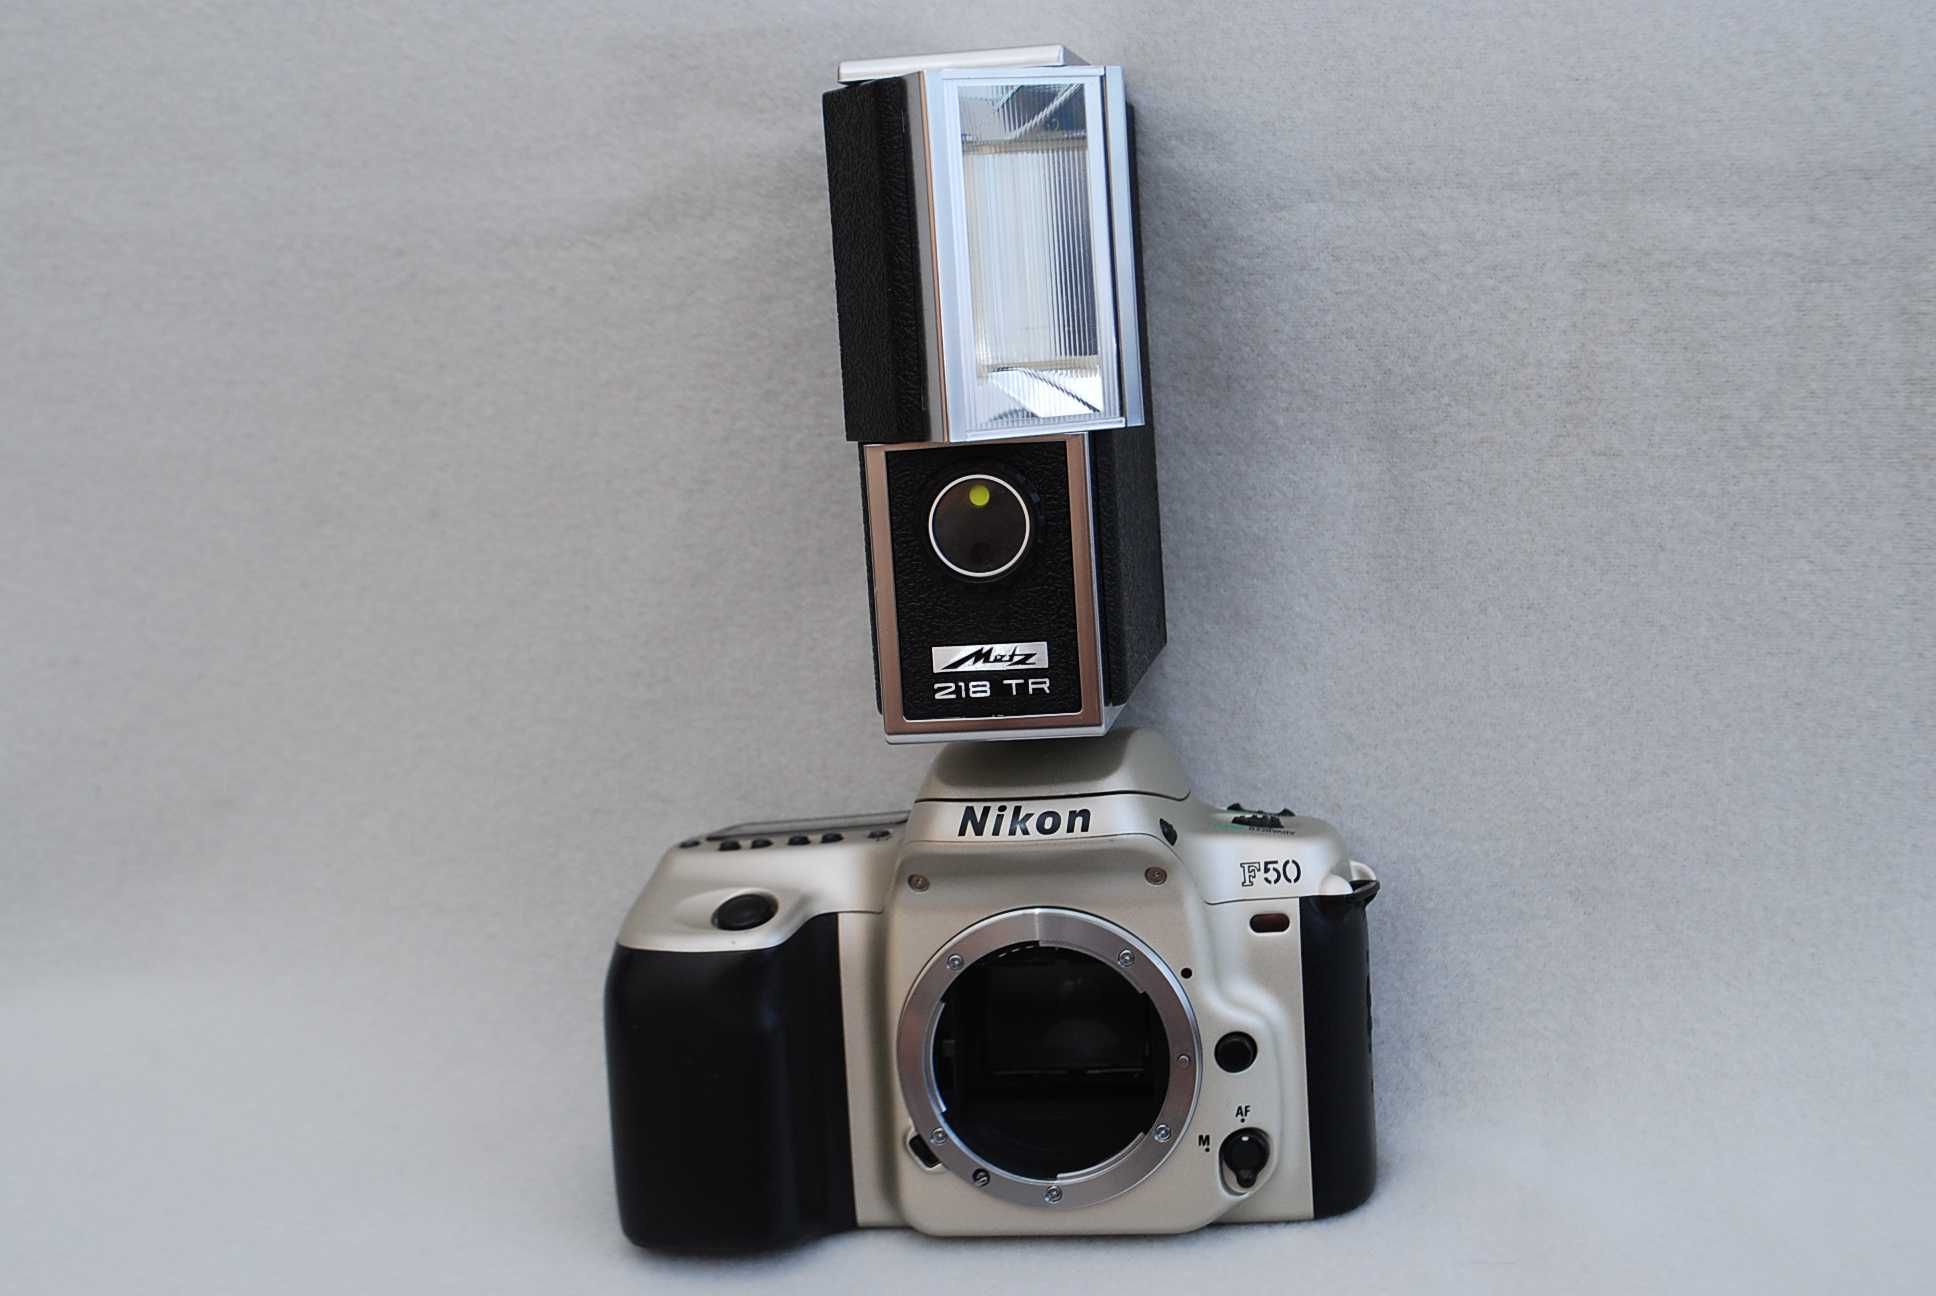 Nikon F50 + Metz 218 / L27 TR -Uszkodzone